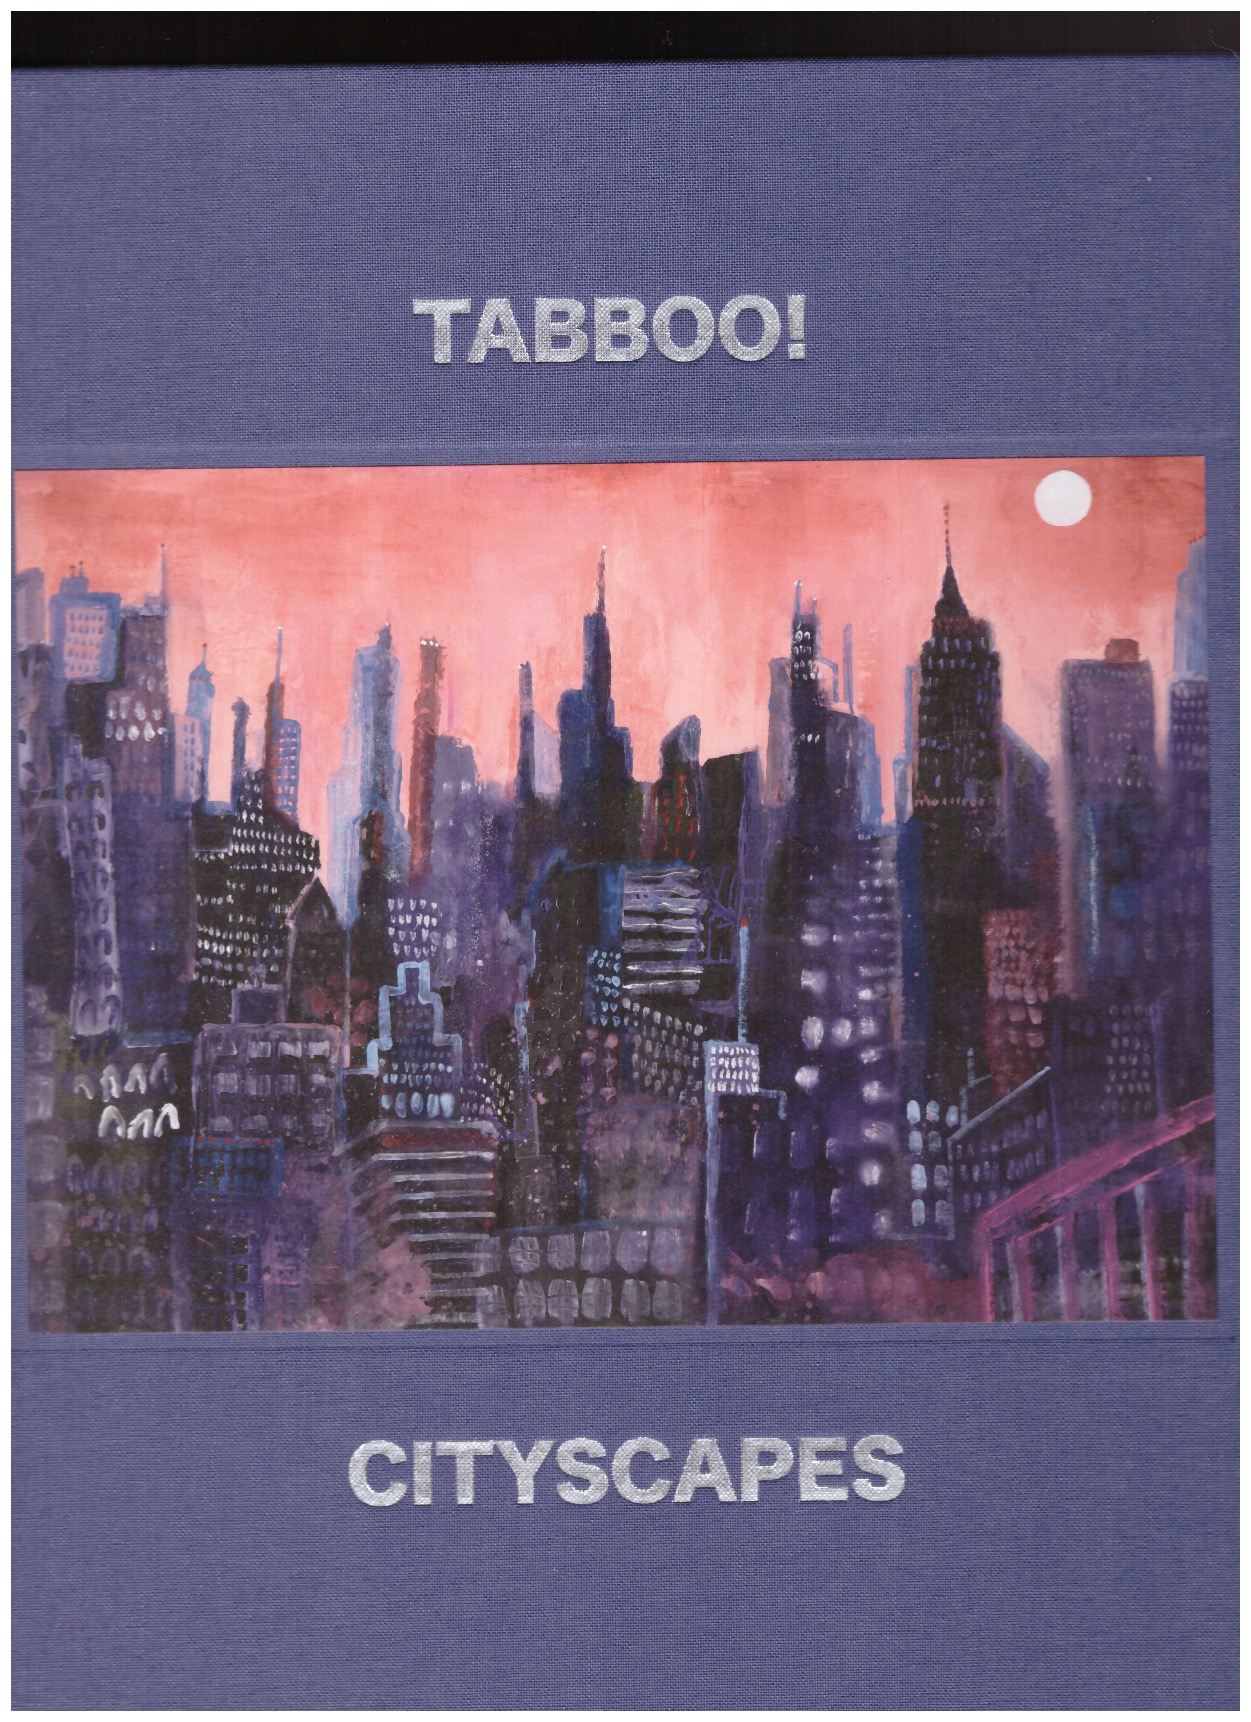 TABBOO! - Cityscapes